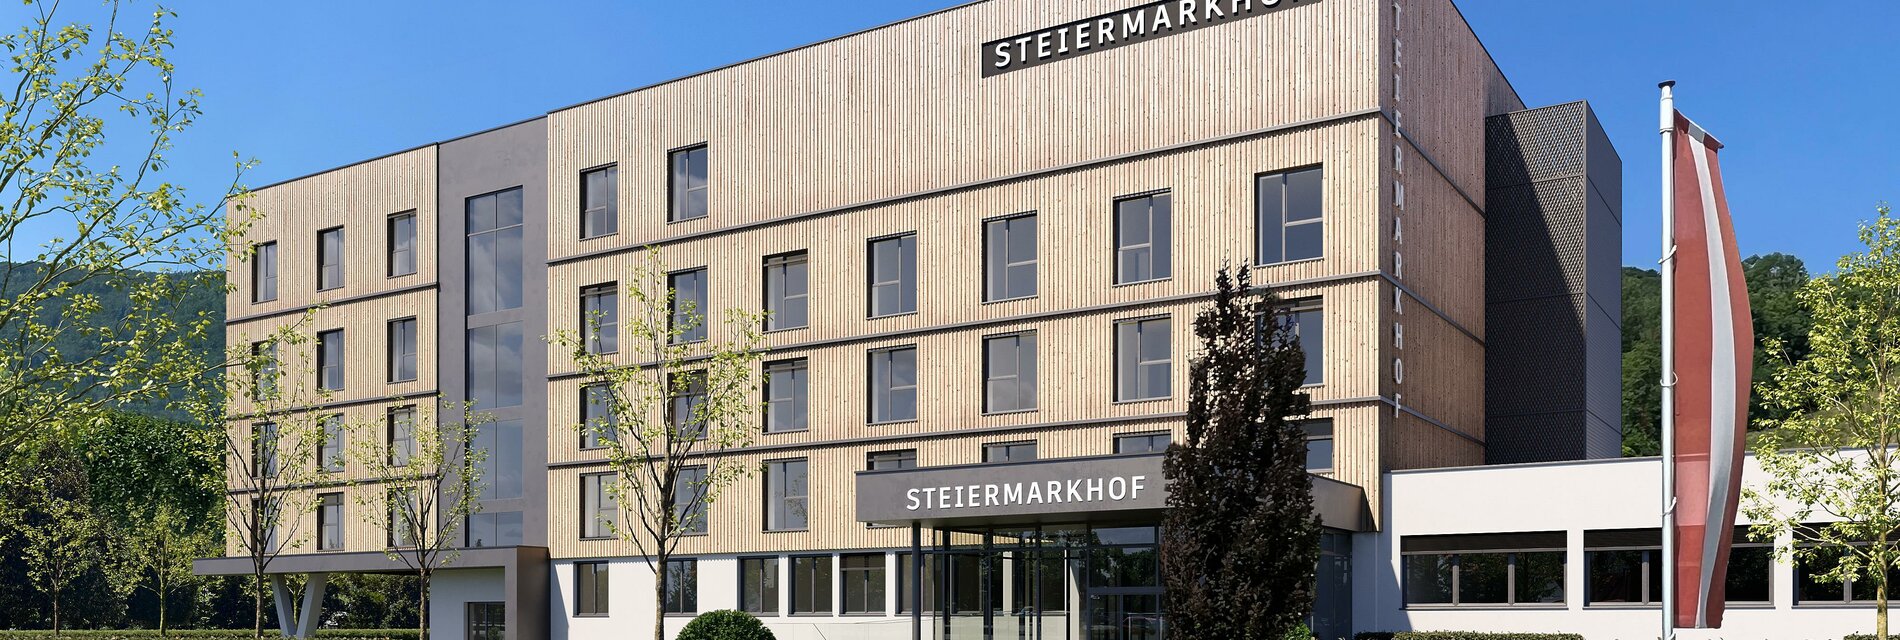 Hotel Steiermarkhof Eingang